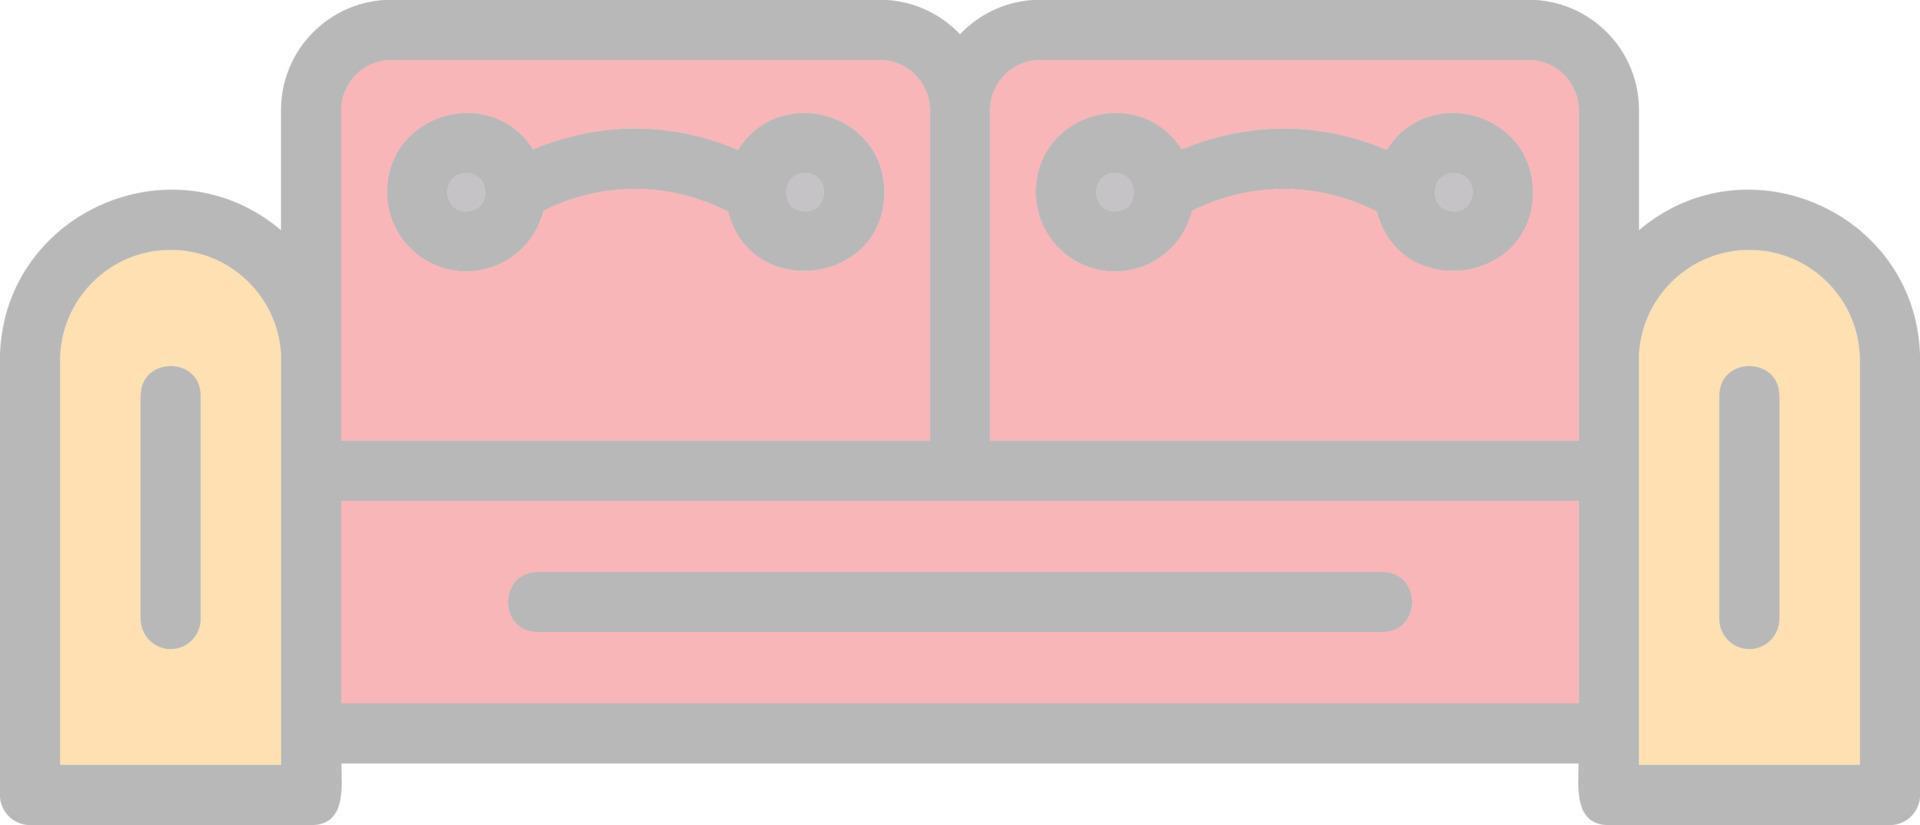 diseño de icono de vector de sofá